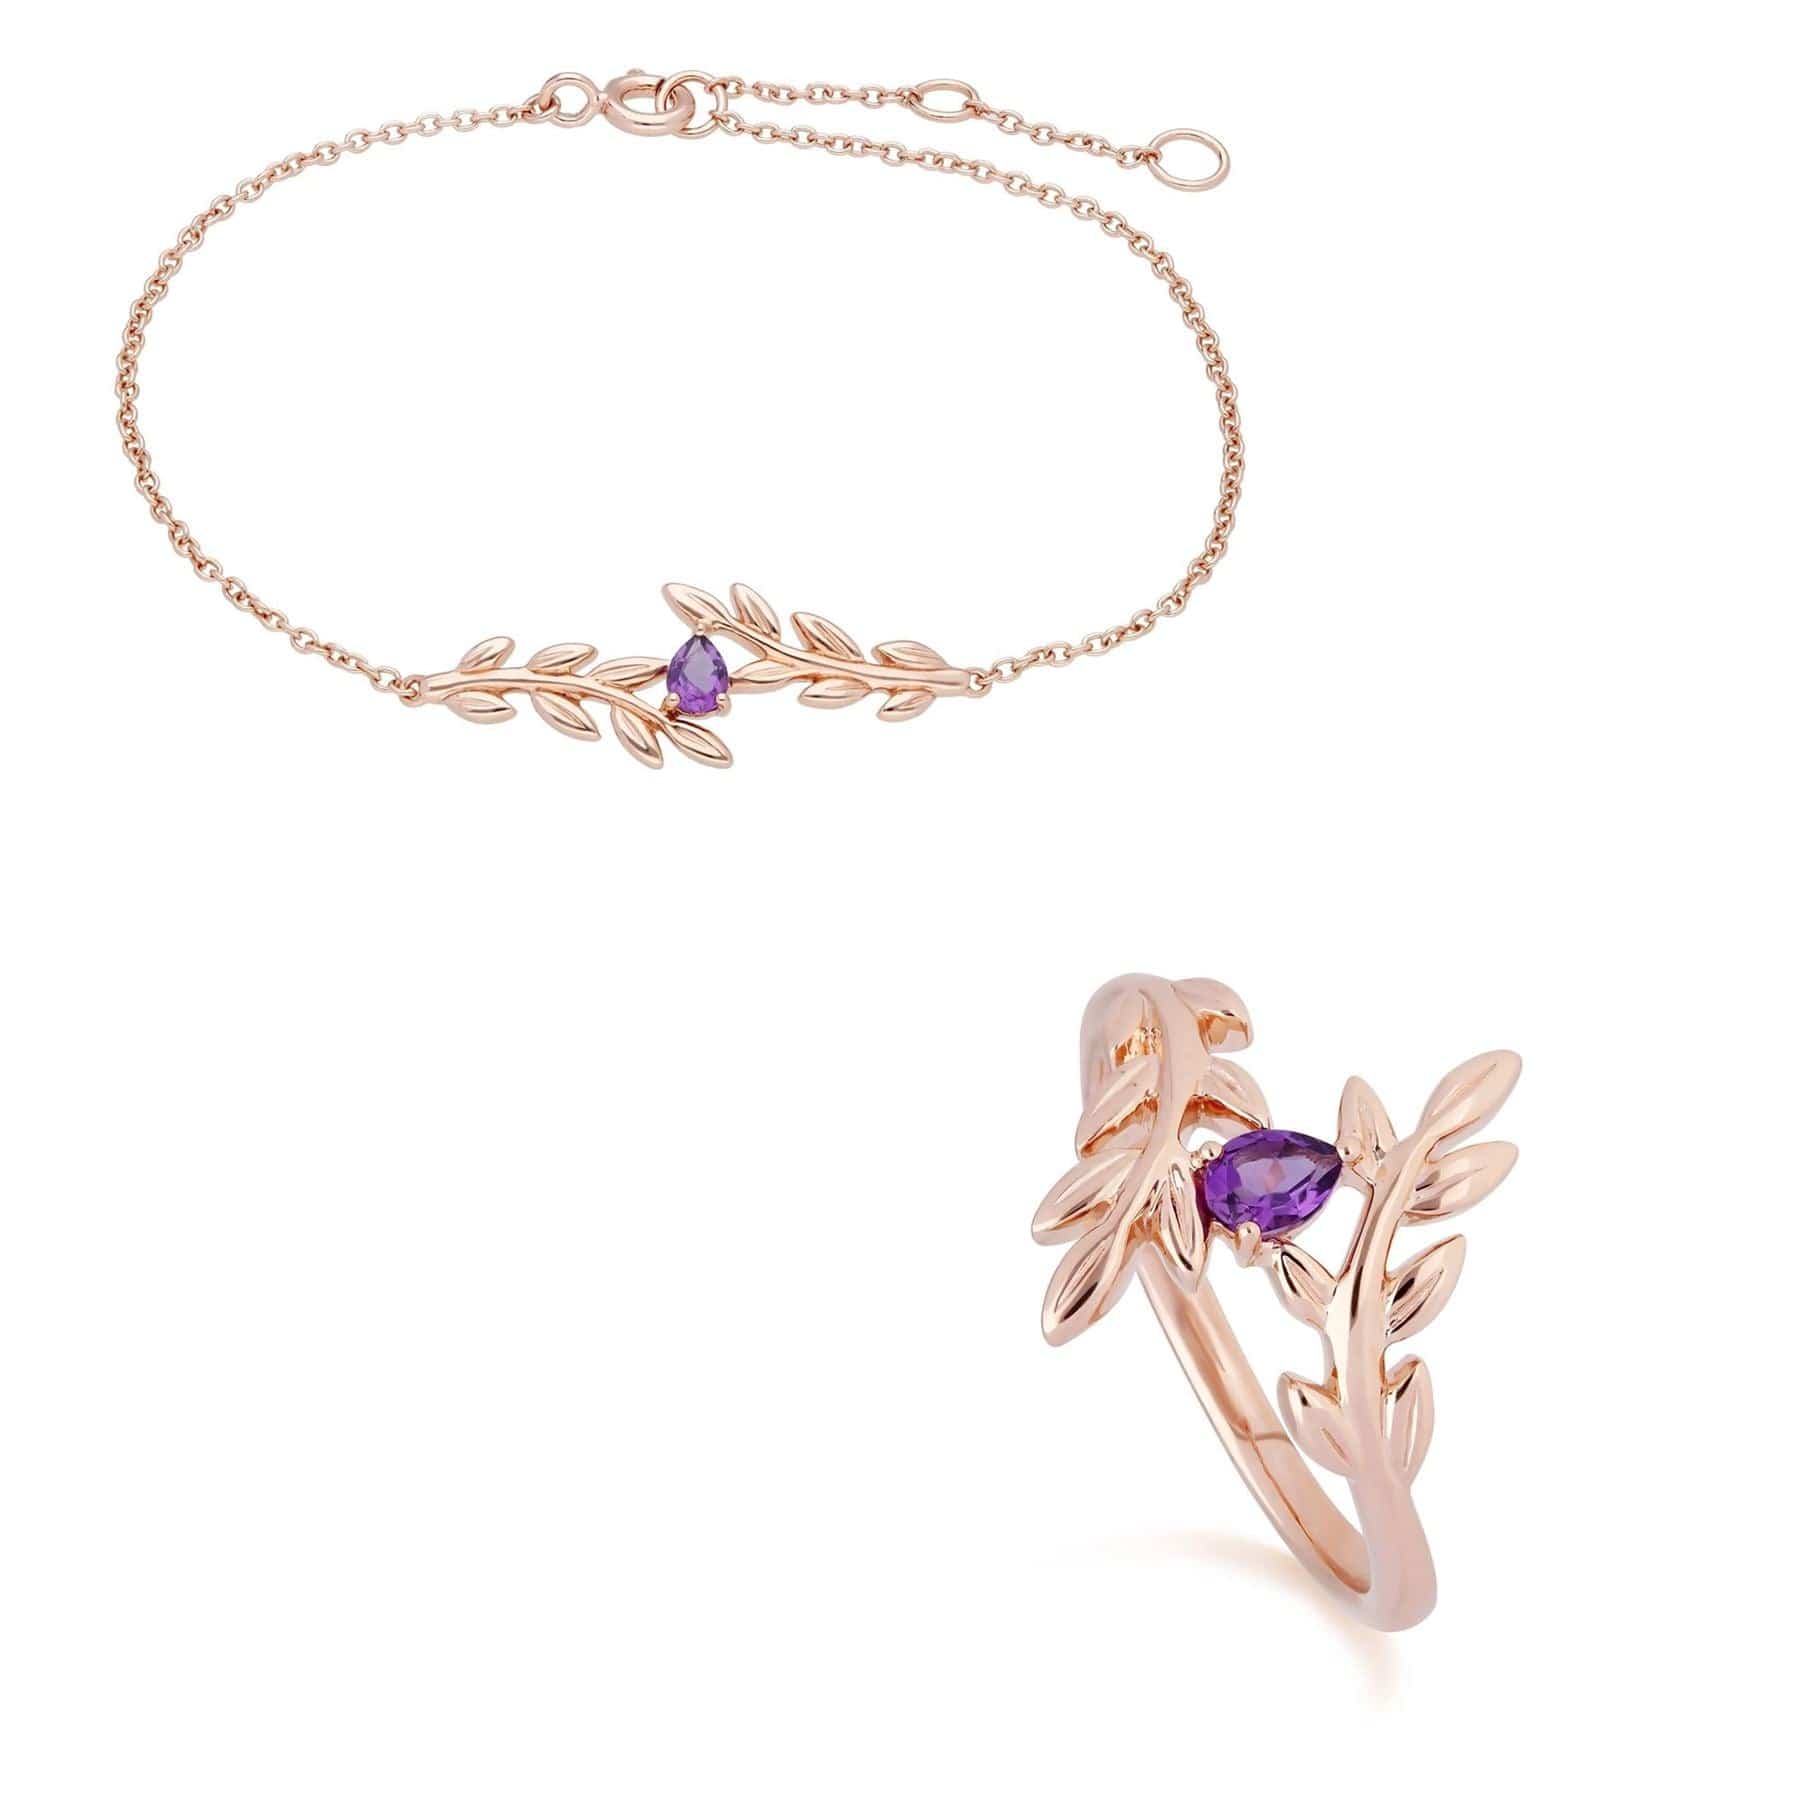 135L0306019-135R1862019 O Leaf Amethyst Bracelet & Ring Set in 9ct Rose Gold 1